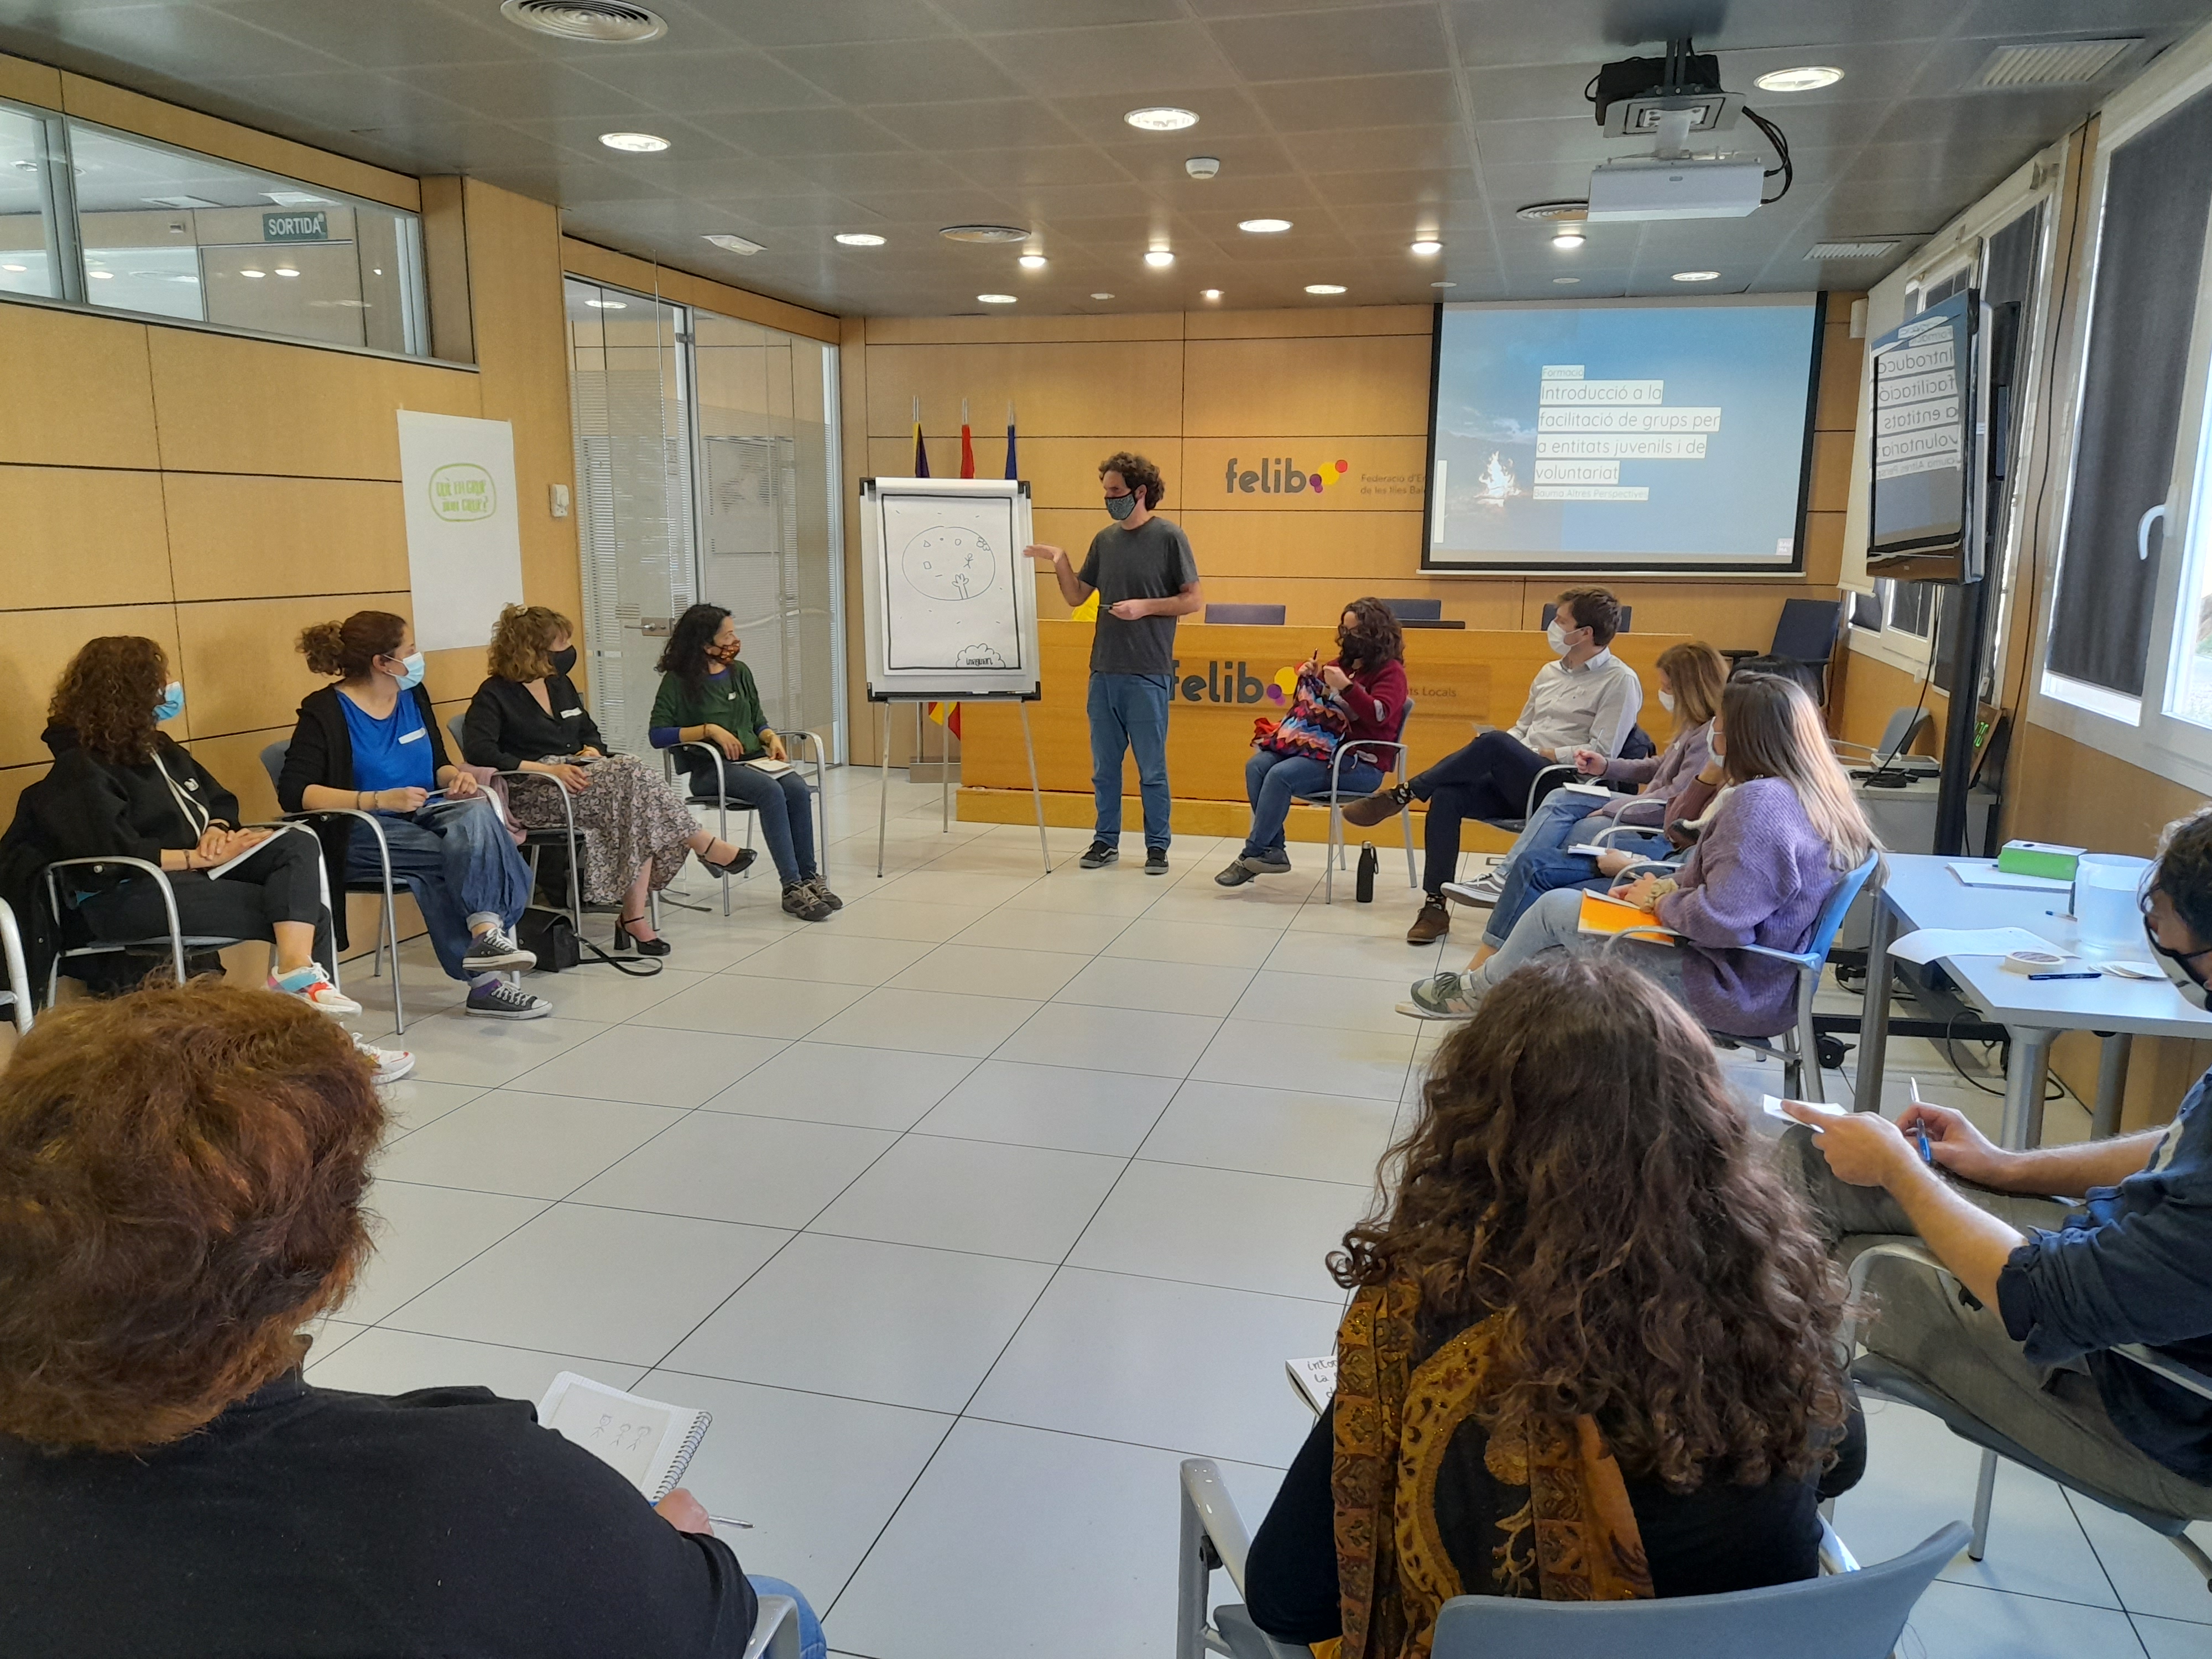 La Direcció Insular de Participació i Joventut del Consell de Mallorca ha impartido un taller de formación en facilitación de grupos para entitades juveniles y de voluntariado de la isla. 